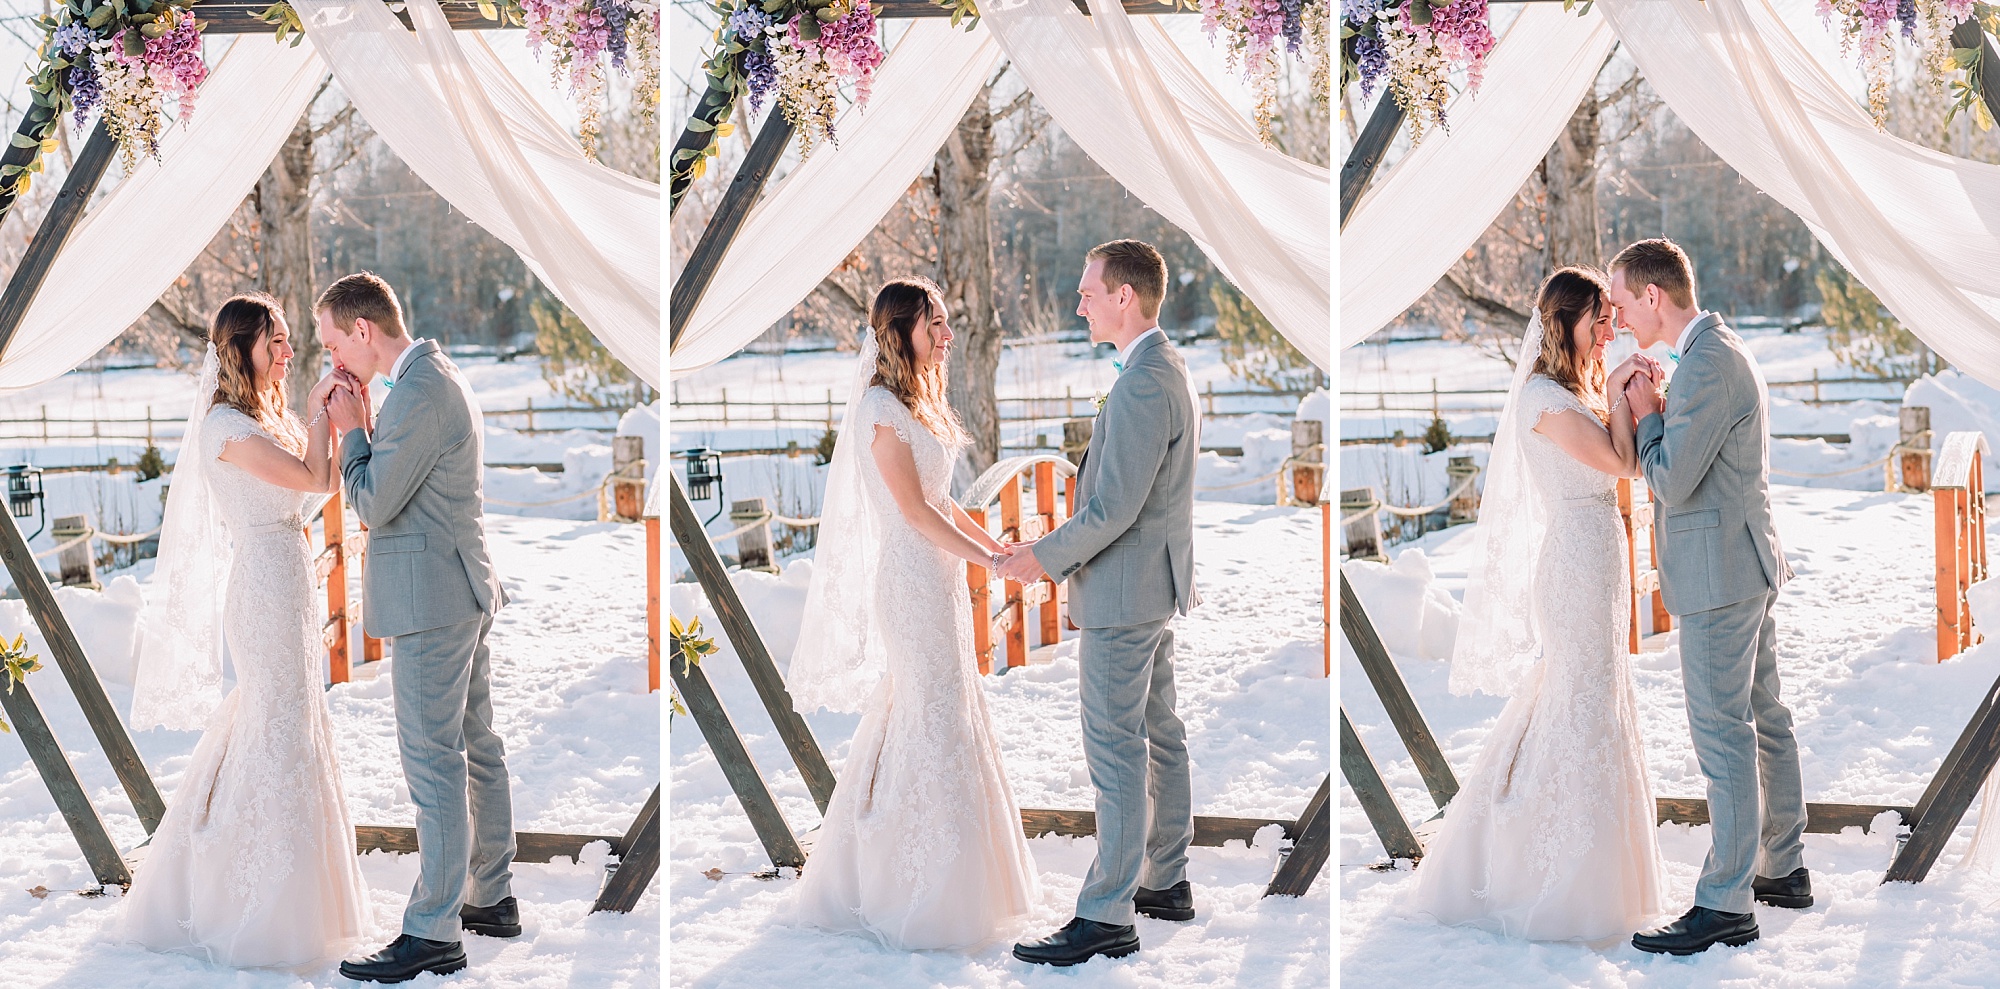 wedding-ring-exchange-voews-ceremony-idaho-photographer-winter-snow